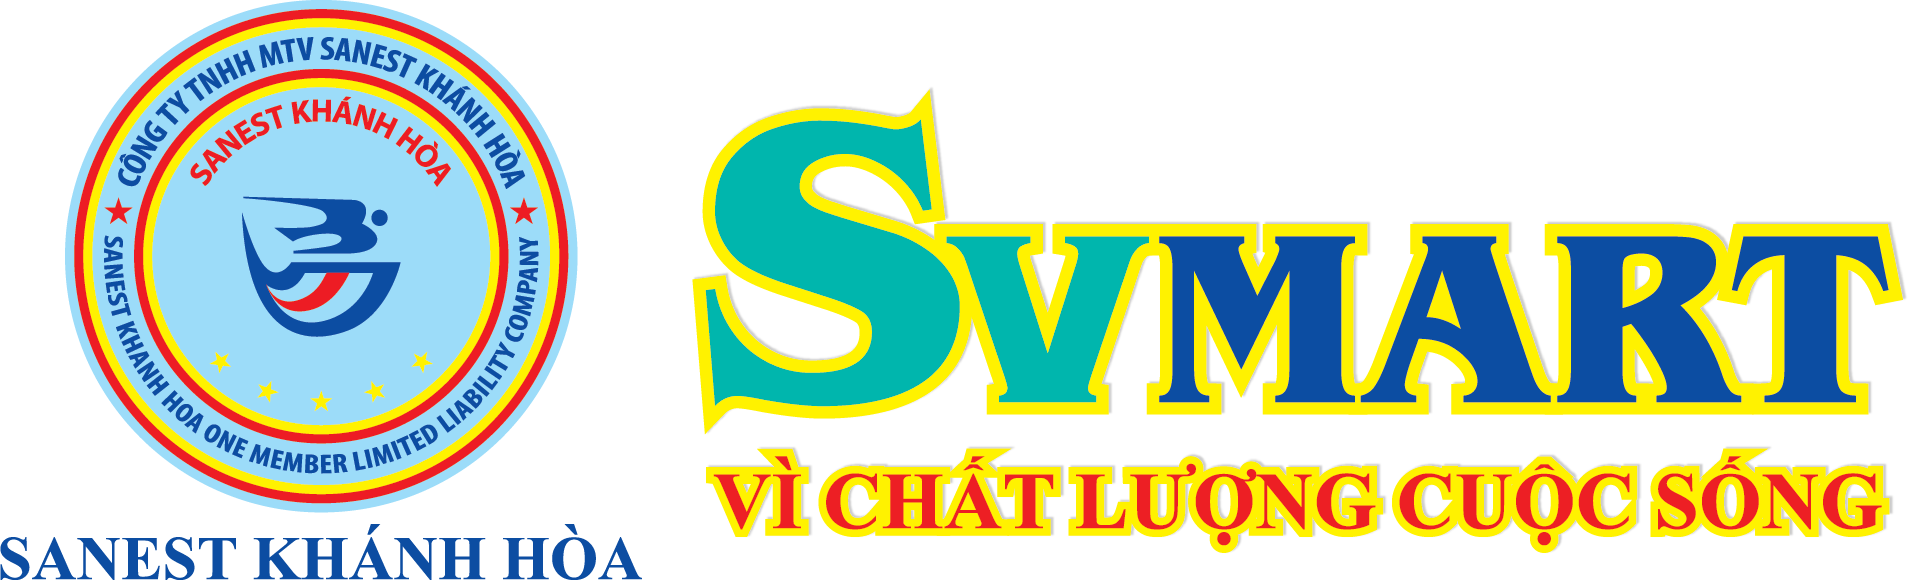 logo Cửa hàng SVMart - Vì chất lượng cuộc sống